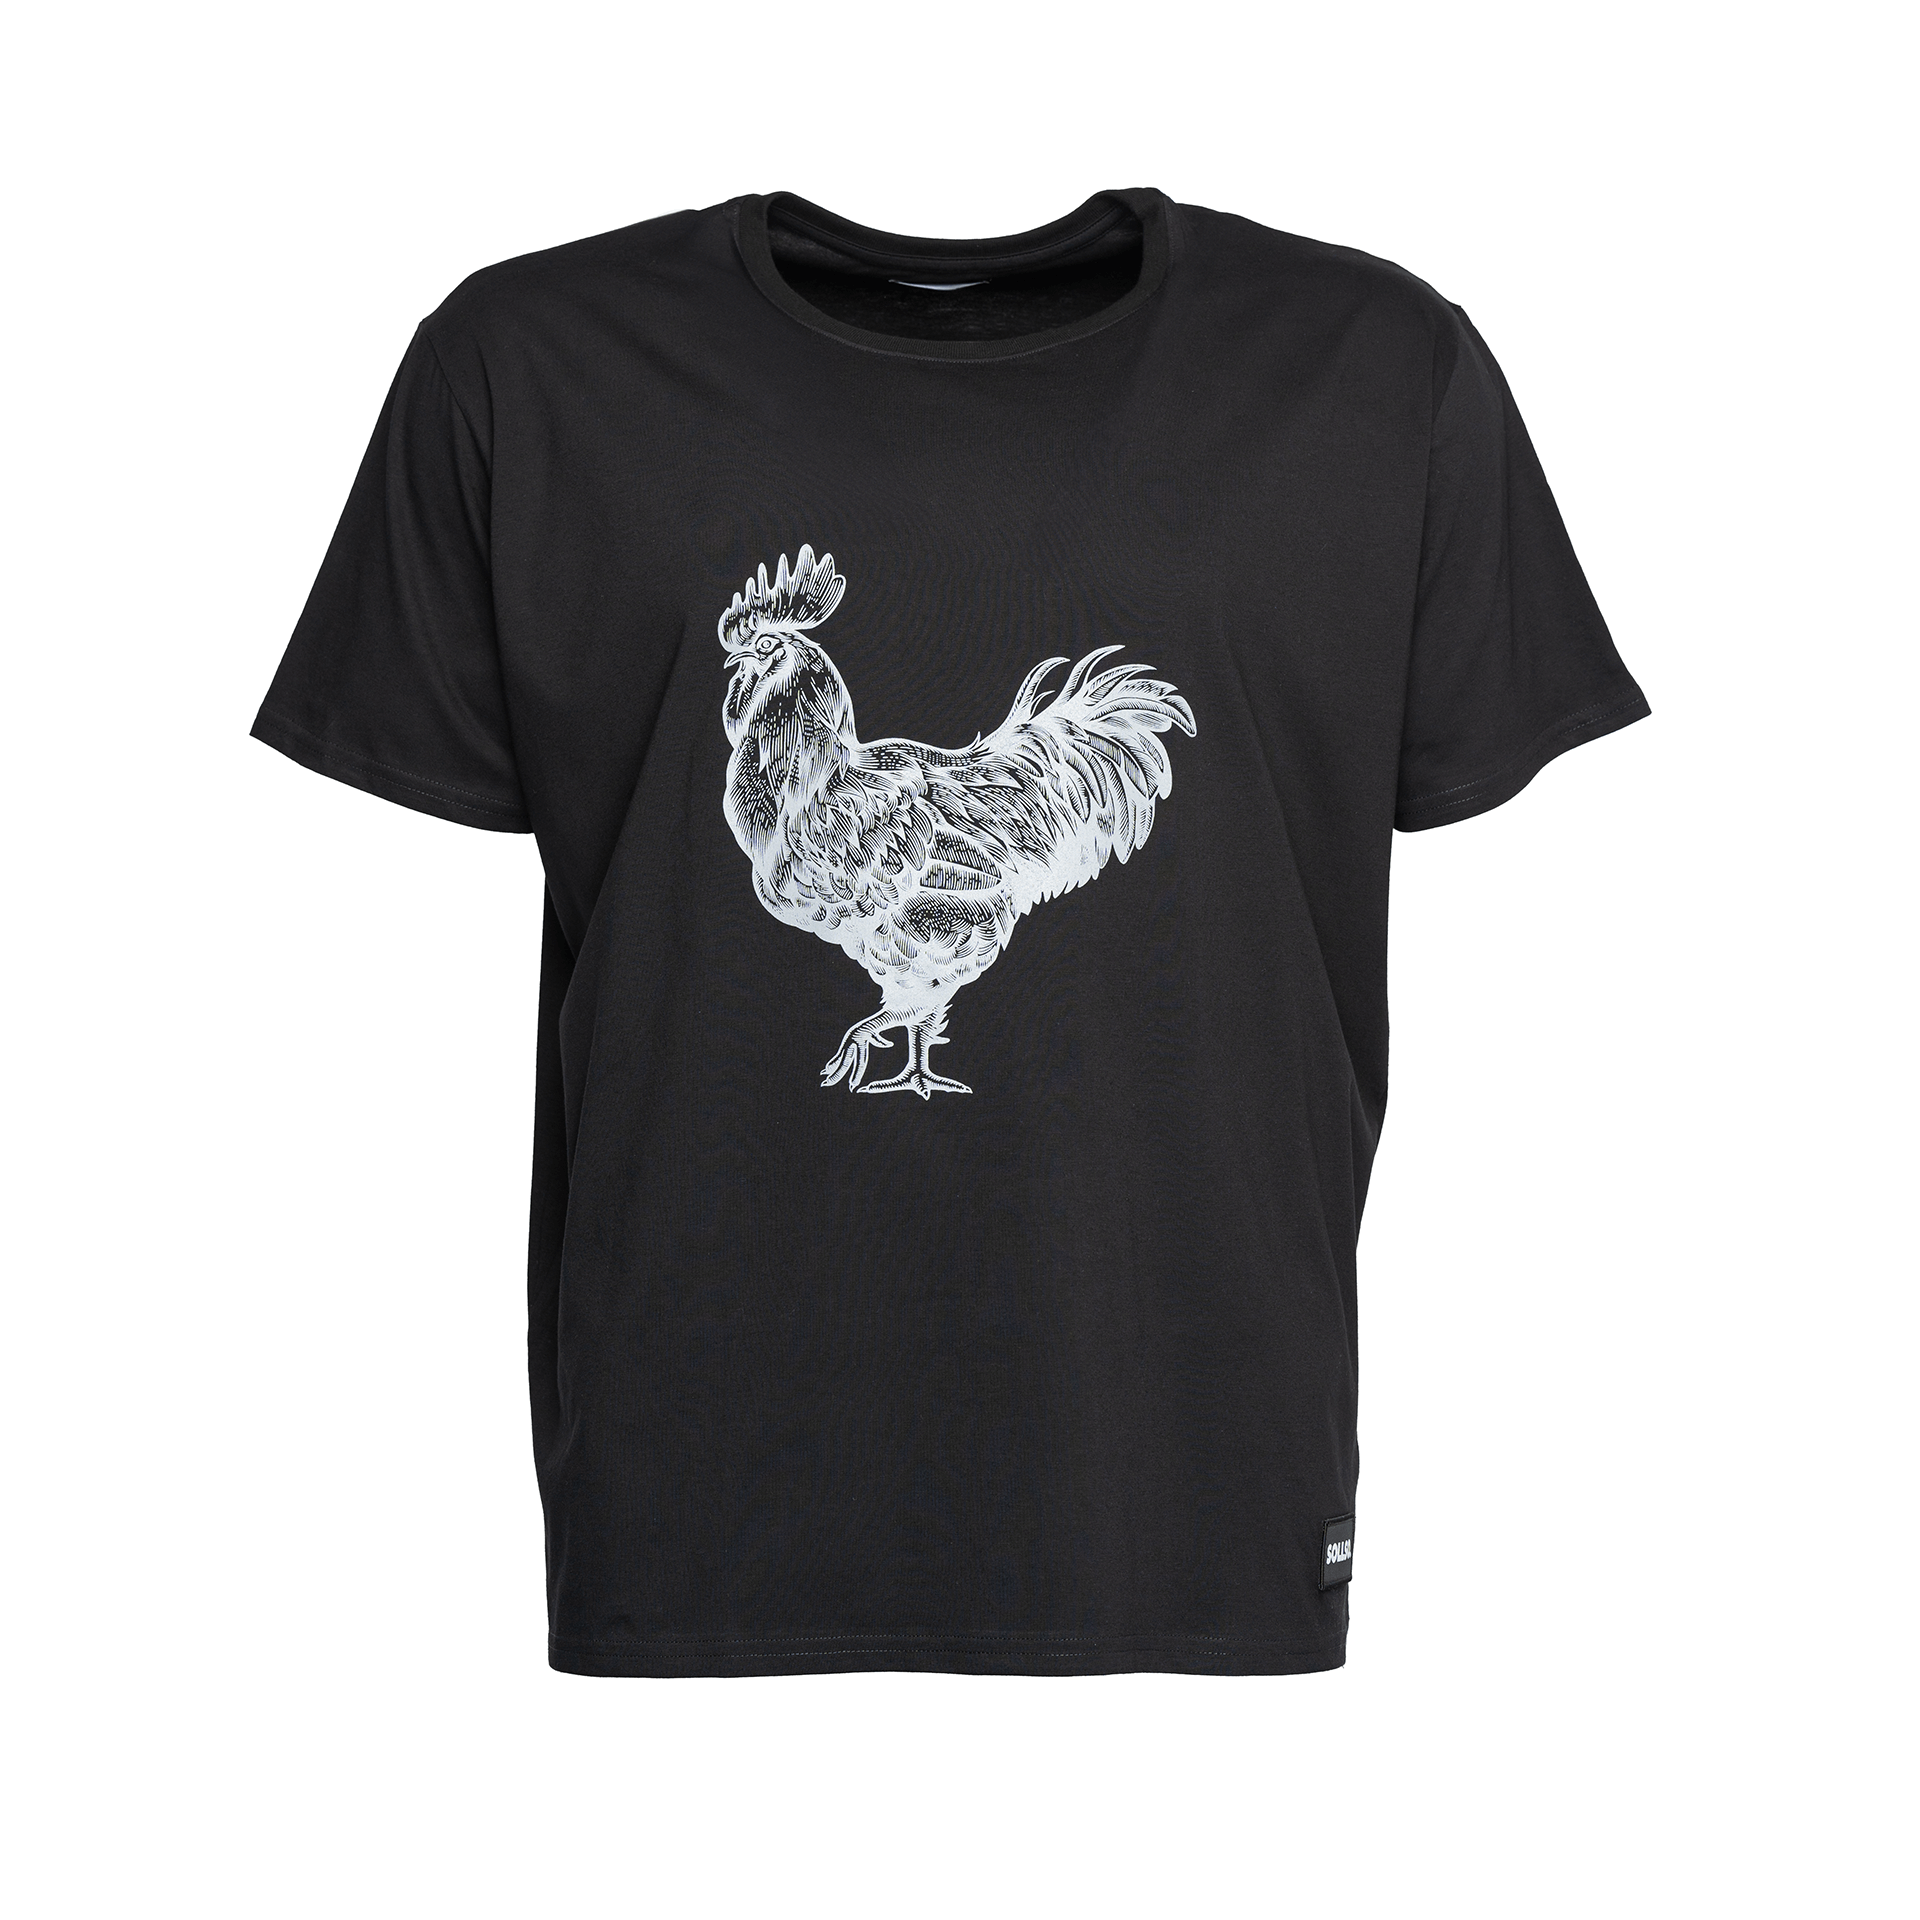 SOLLSO. T-Shirt "Rooster", Farbe Dark Black, Größe S